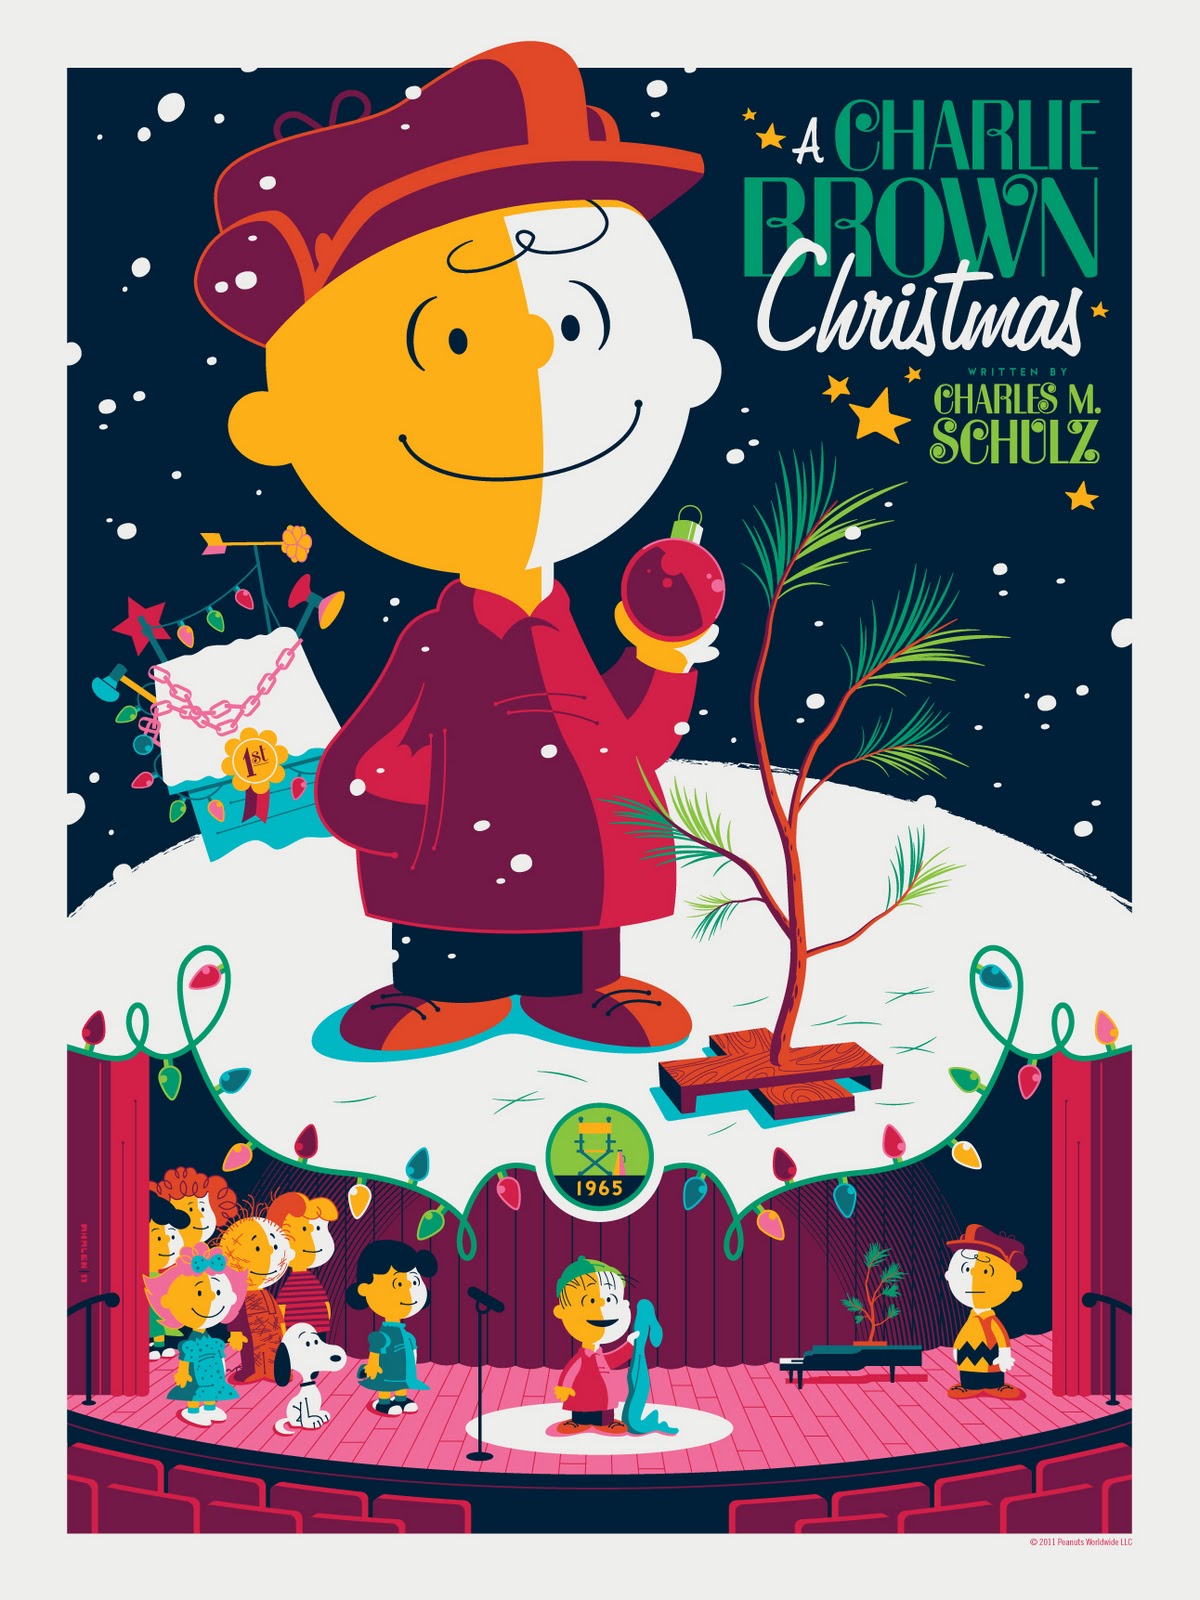 PoP-ArT Emporium: Tom Whalen's “A Charlie Brown Christmas”